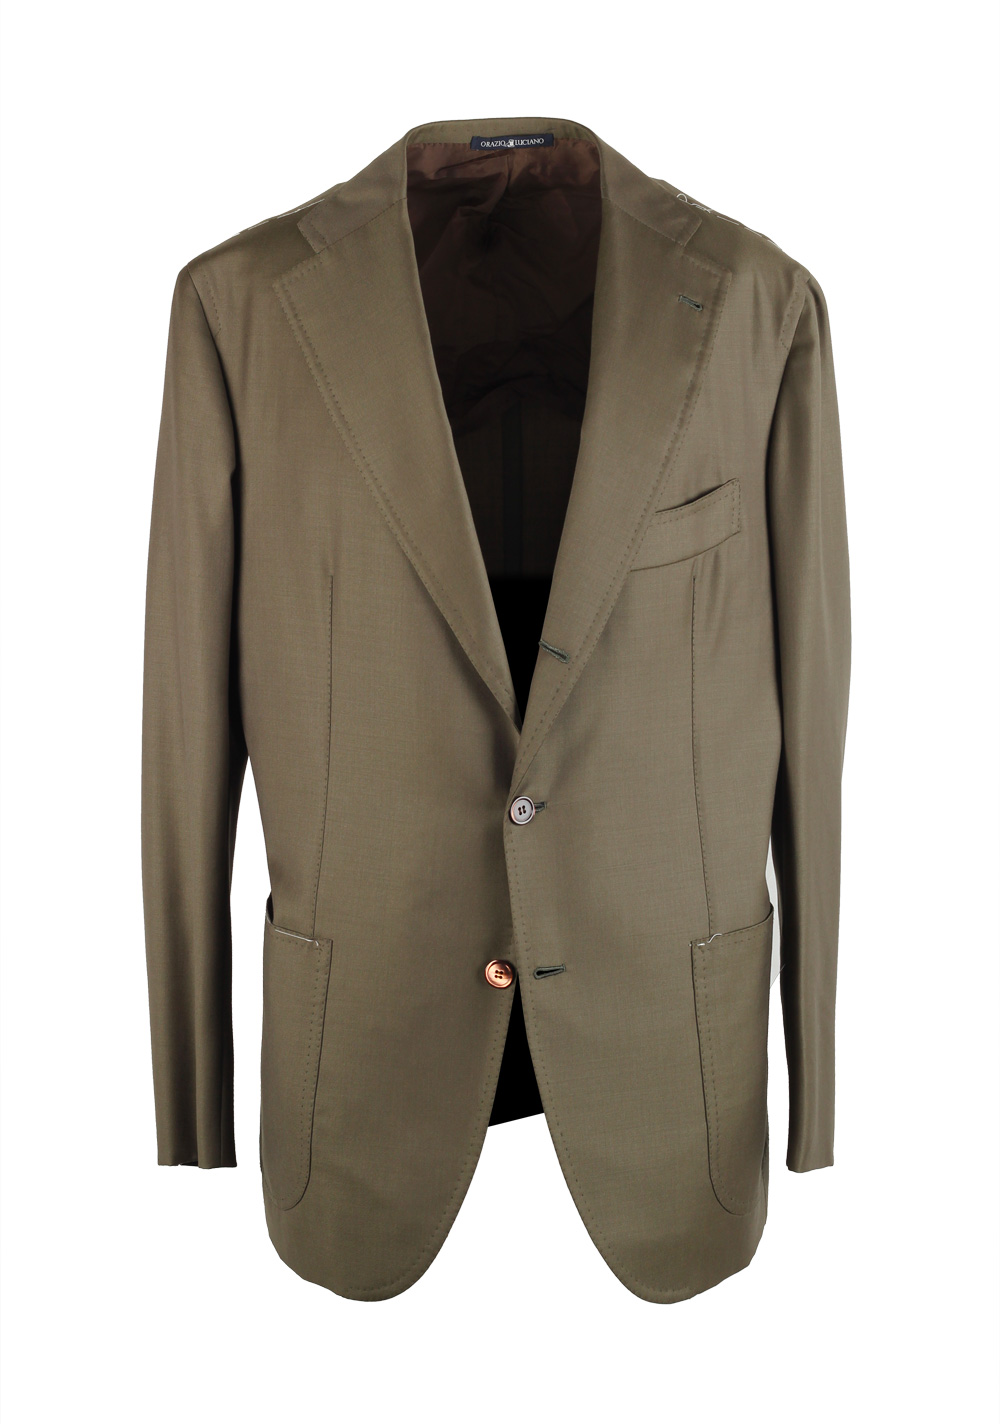 Orazio Luciano La Vera Sartoria Napoletana Olive Green Suit Size 52 / 42R U.S. | Costume Limité